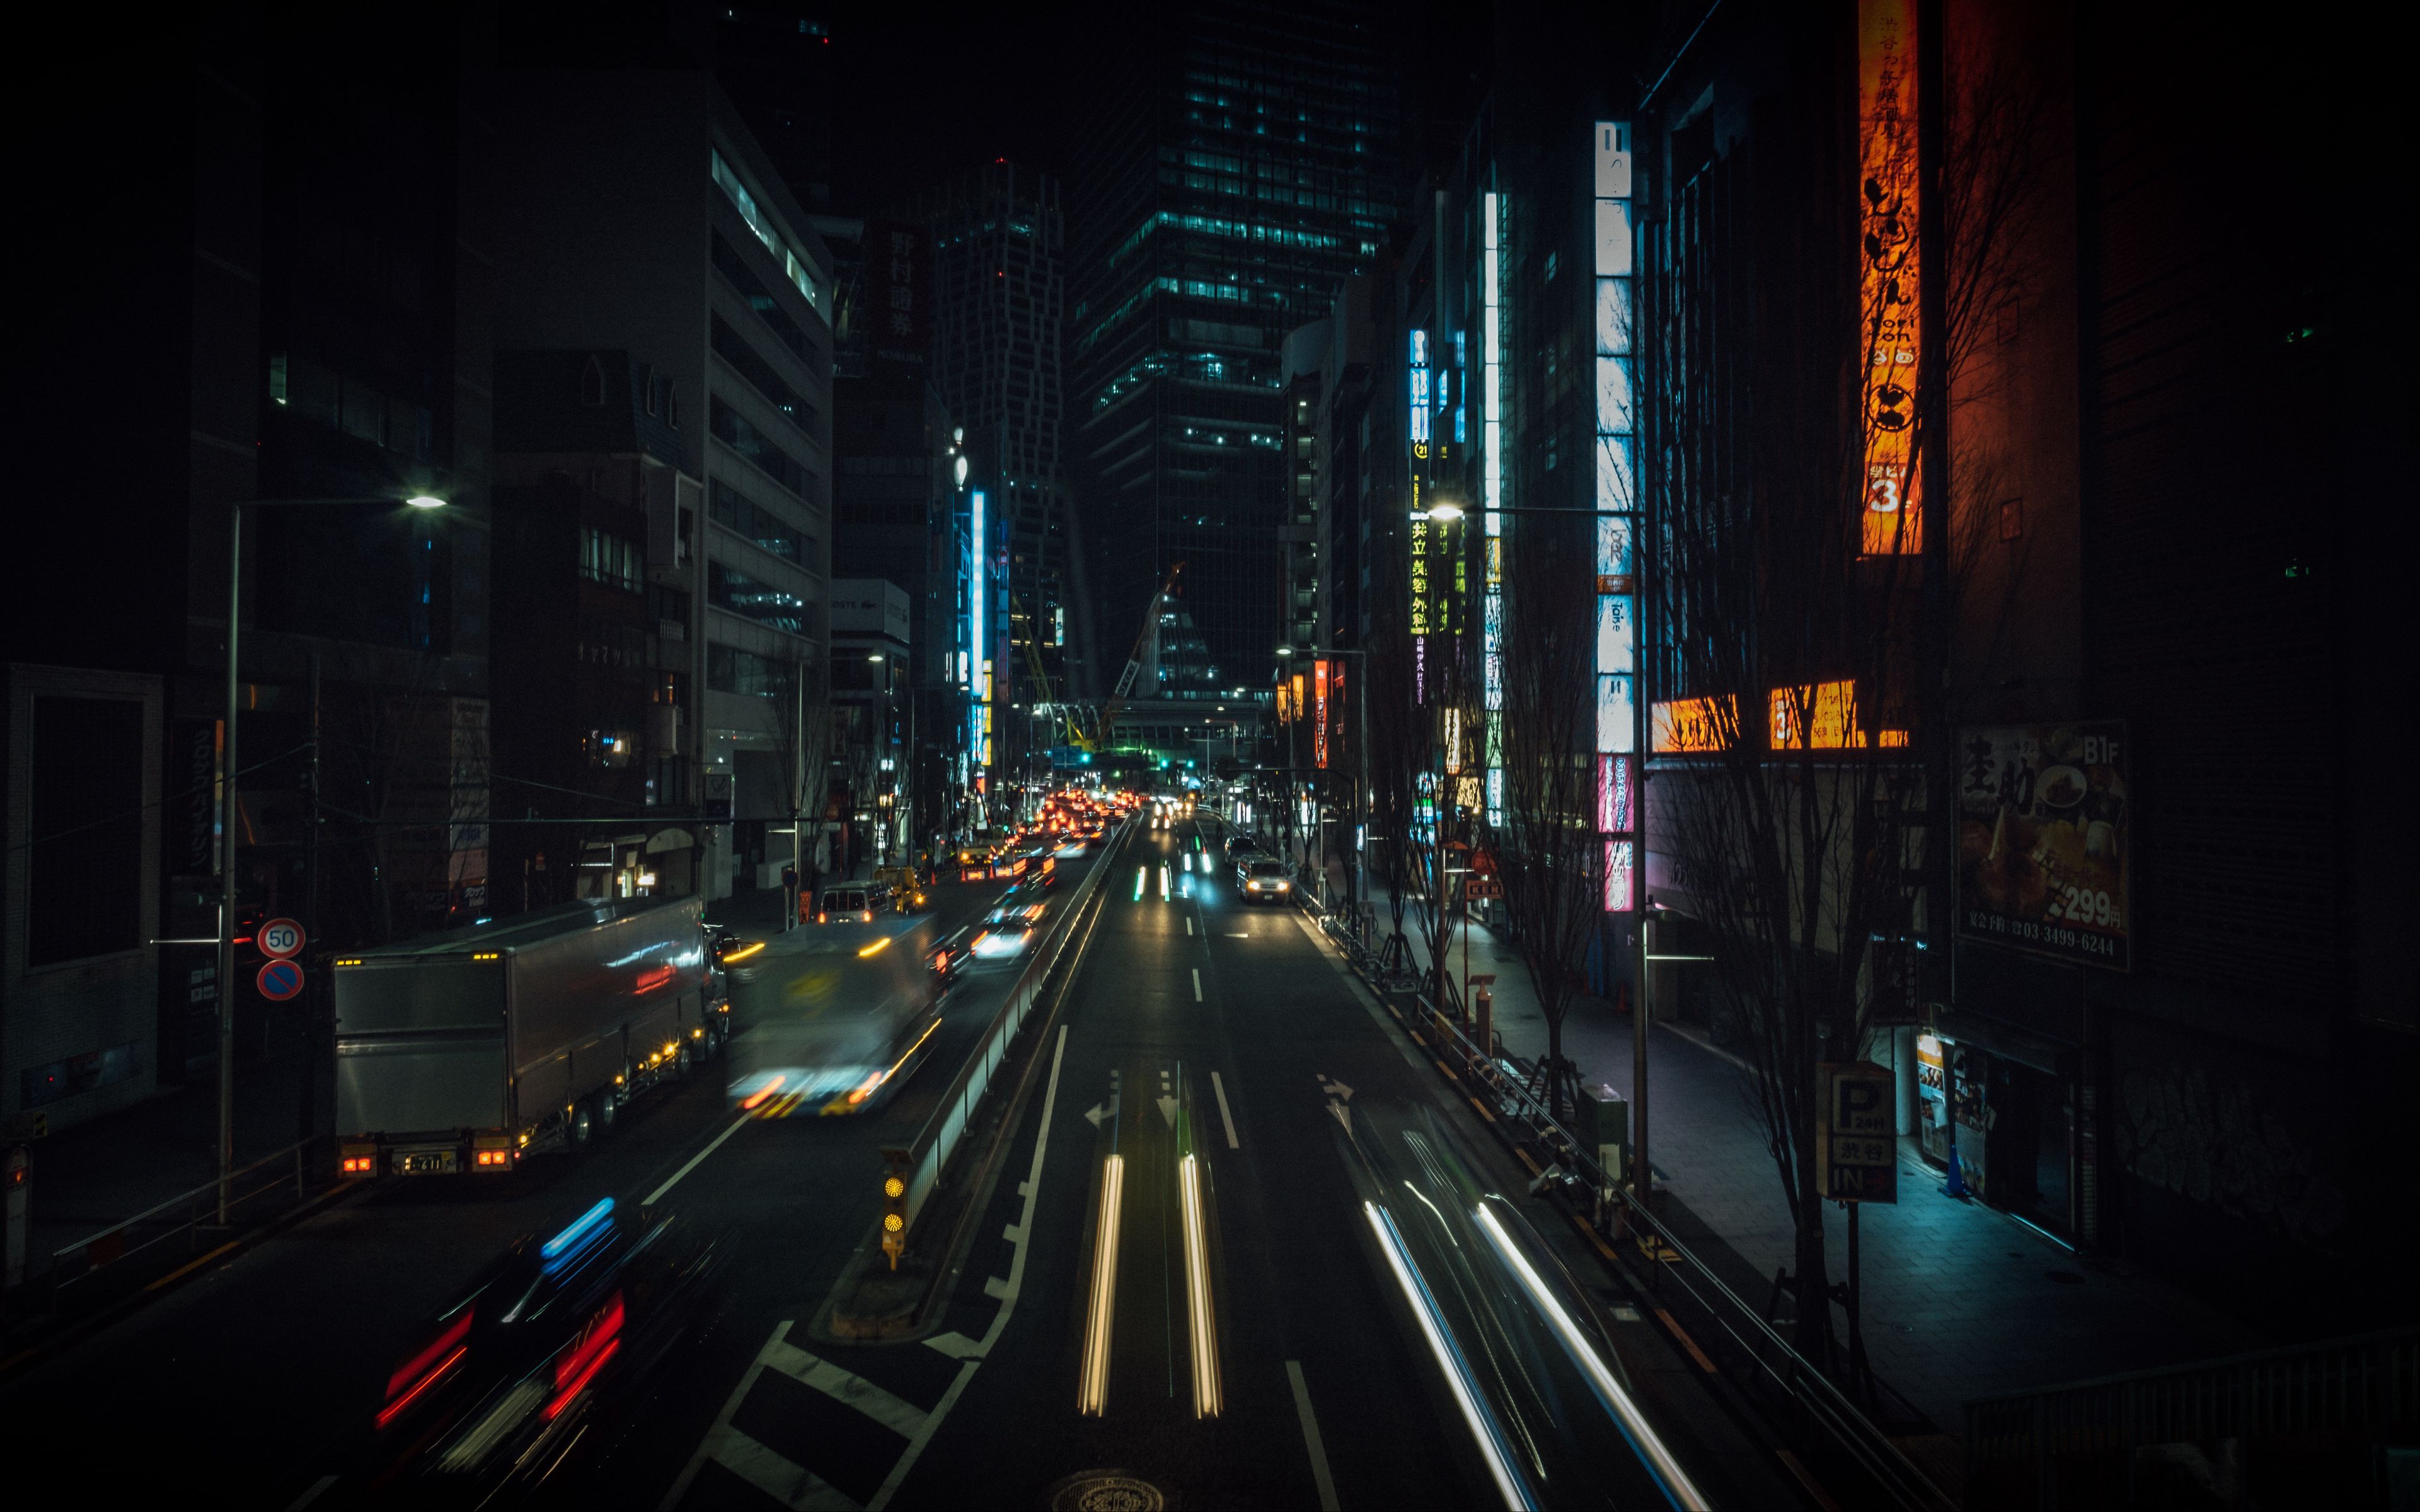 Tokyo Neon Images - Free Download on Freepik